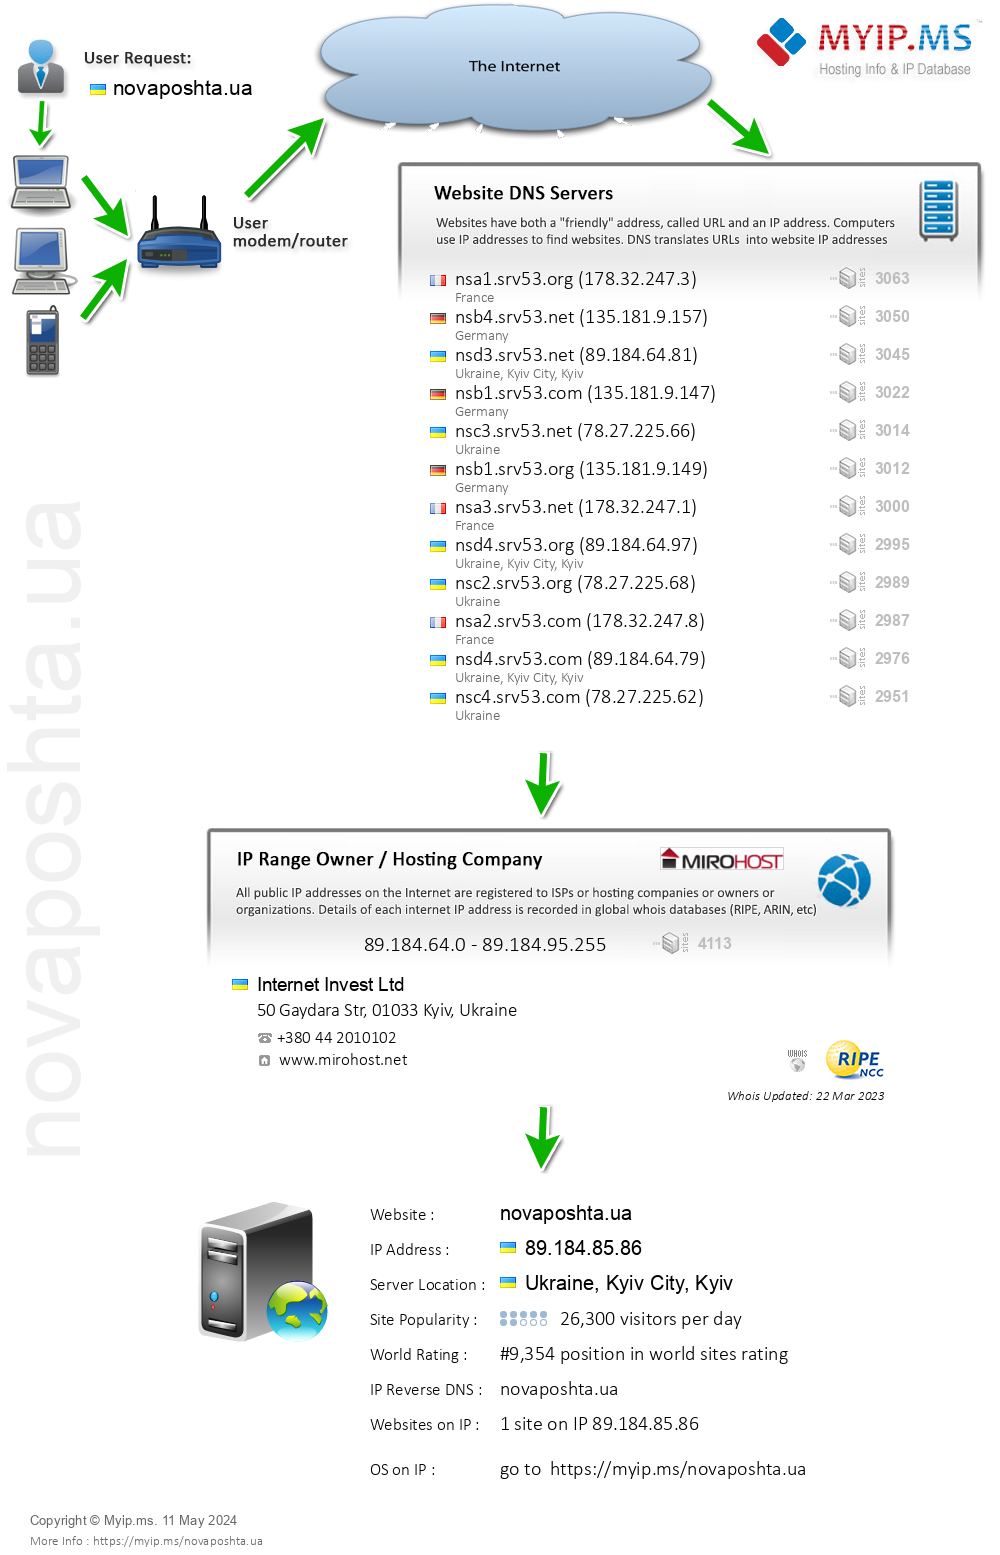 Novaposhta.ua - Website Hosting Visual IP Diagram